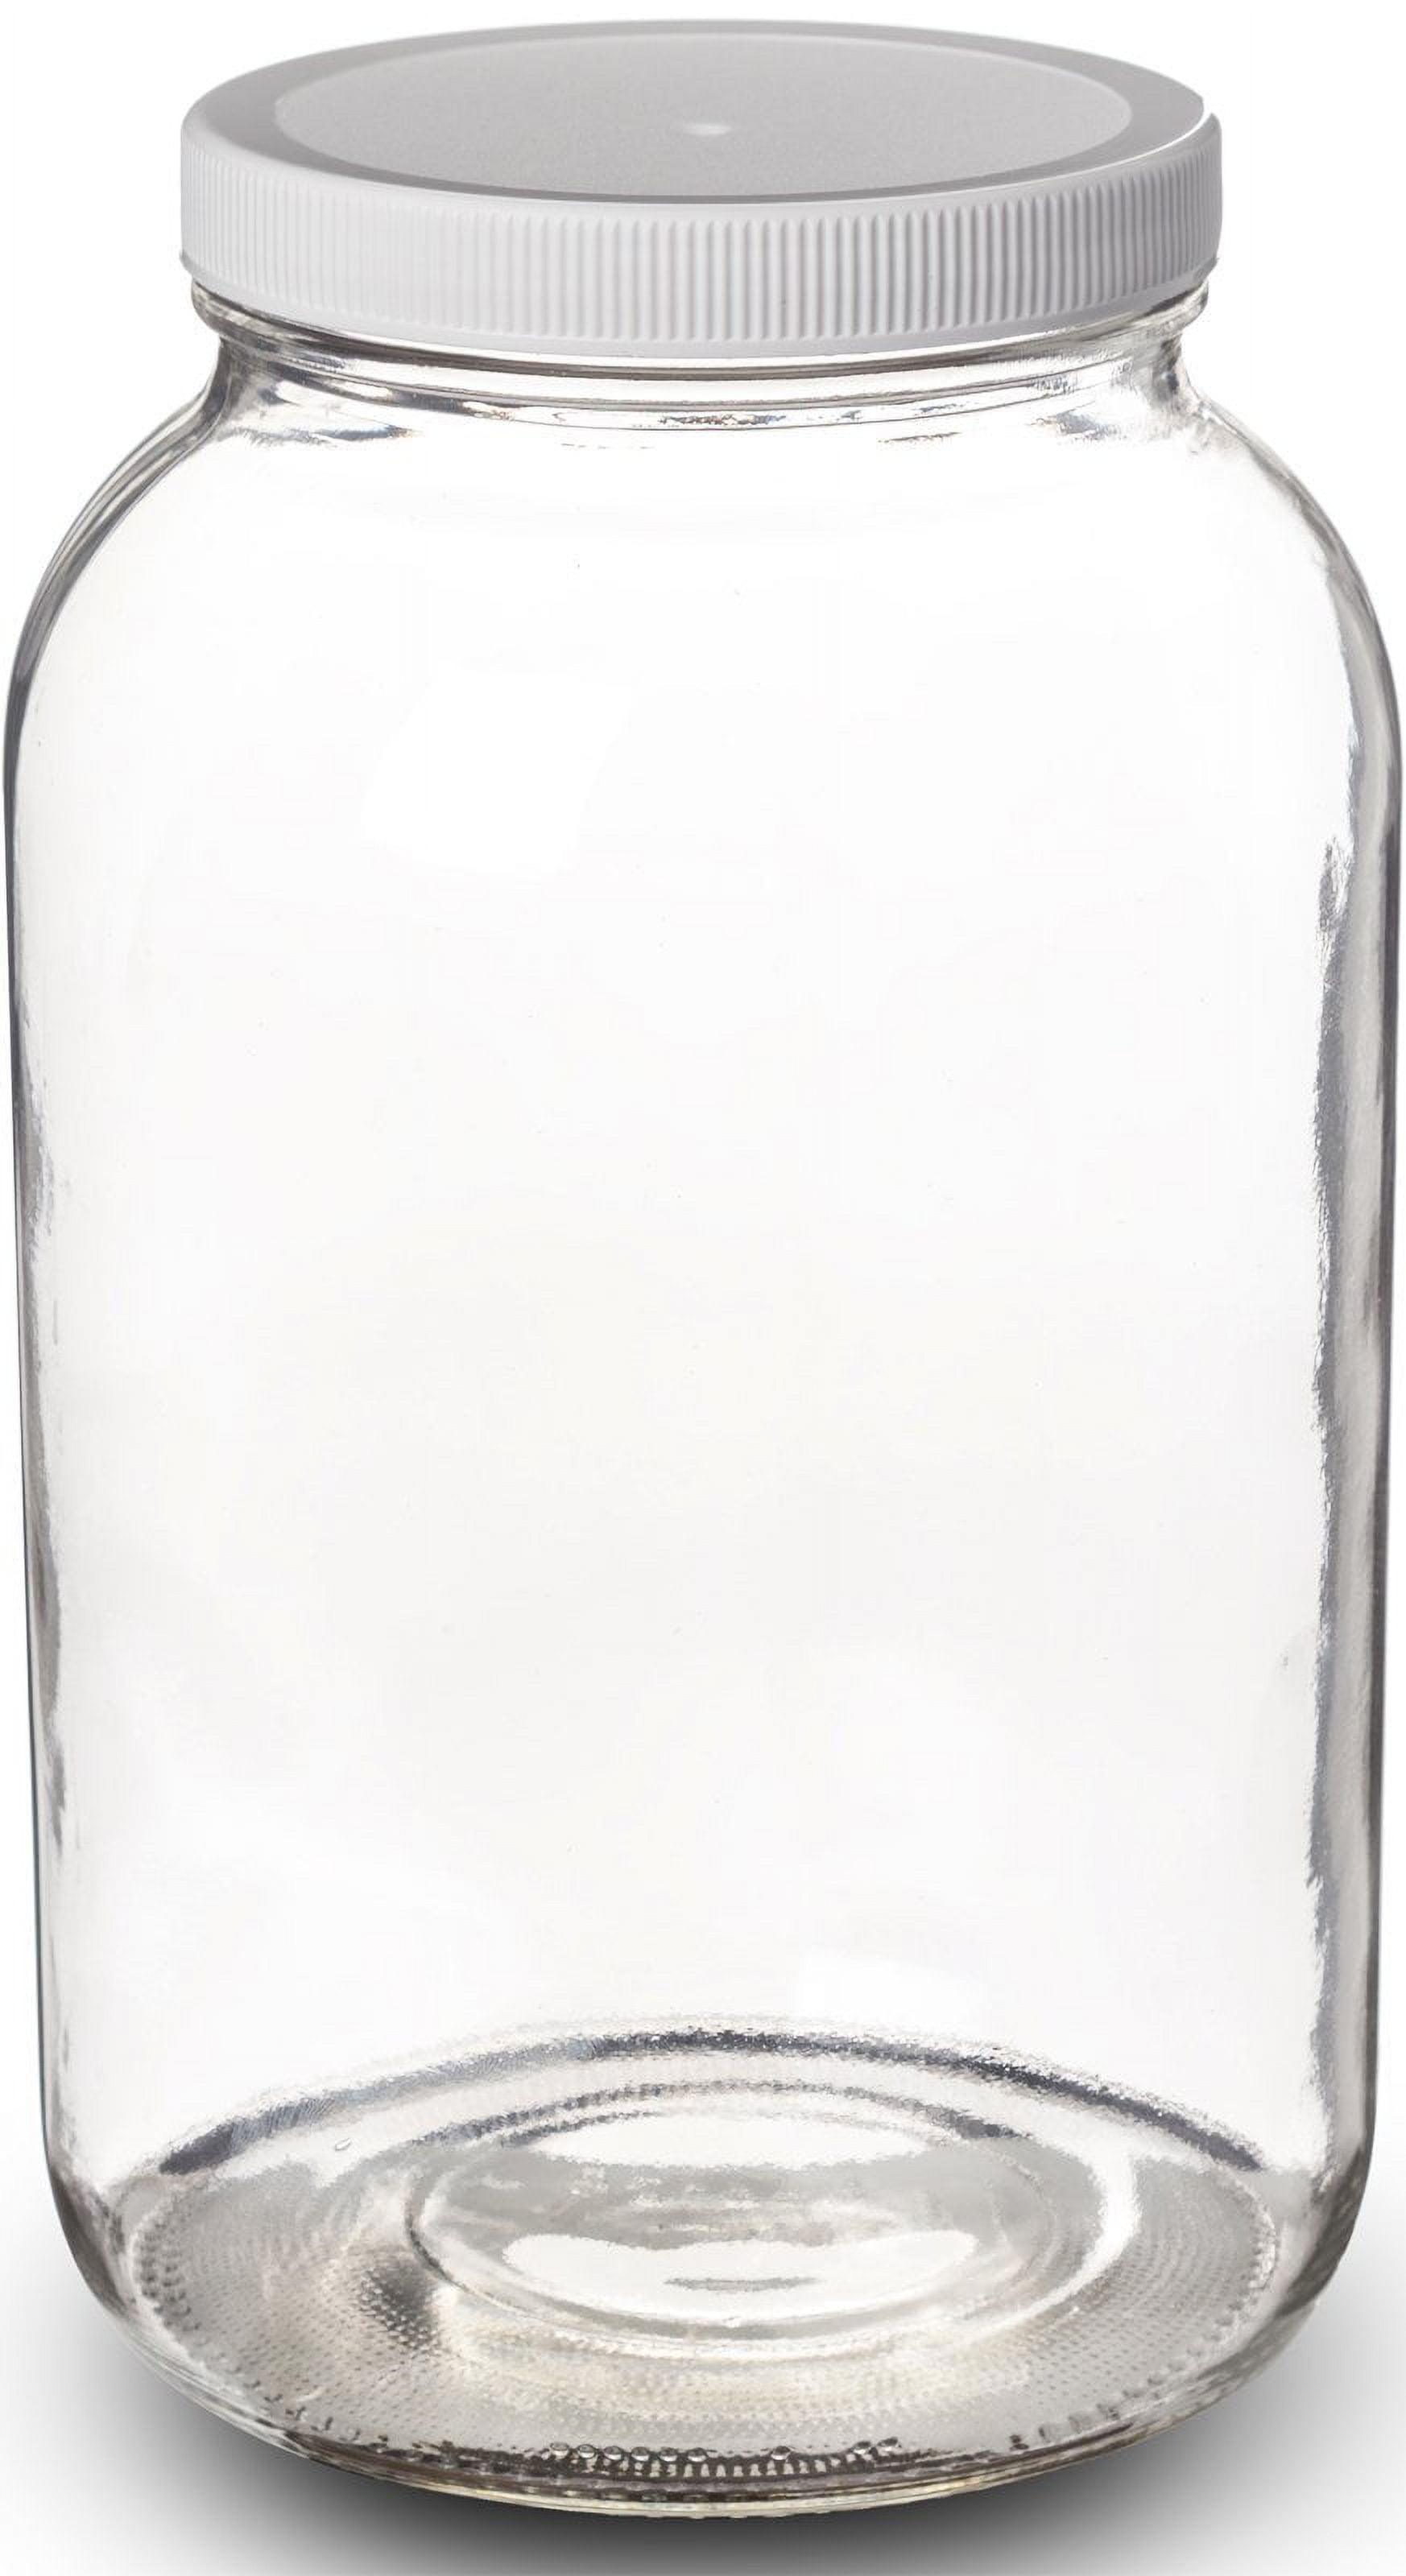 1 Gal Glass Jar With Lid Wide Mouth Airtight Plastic Pour Spout Lids Bulk-Dr